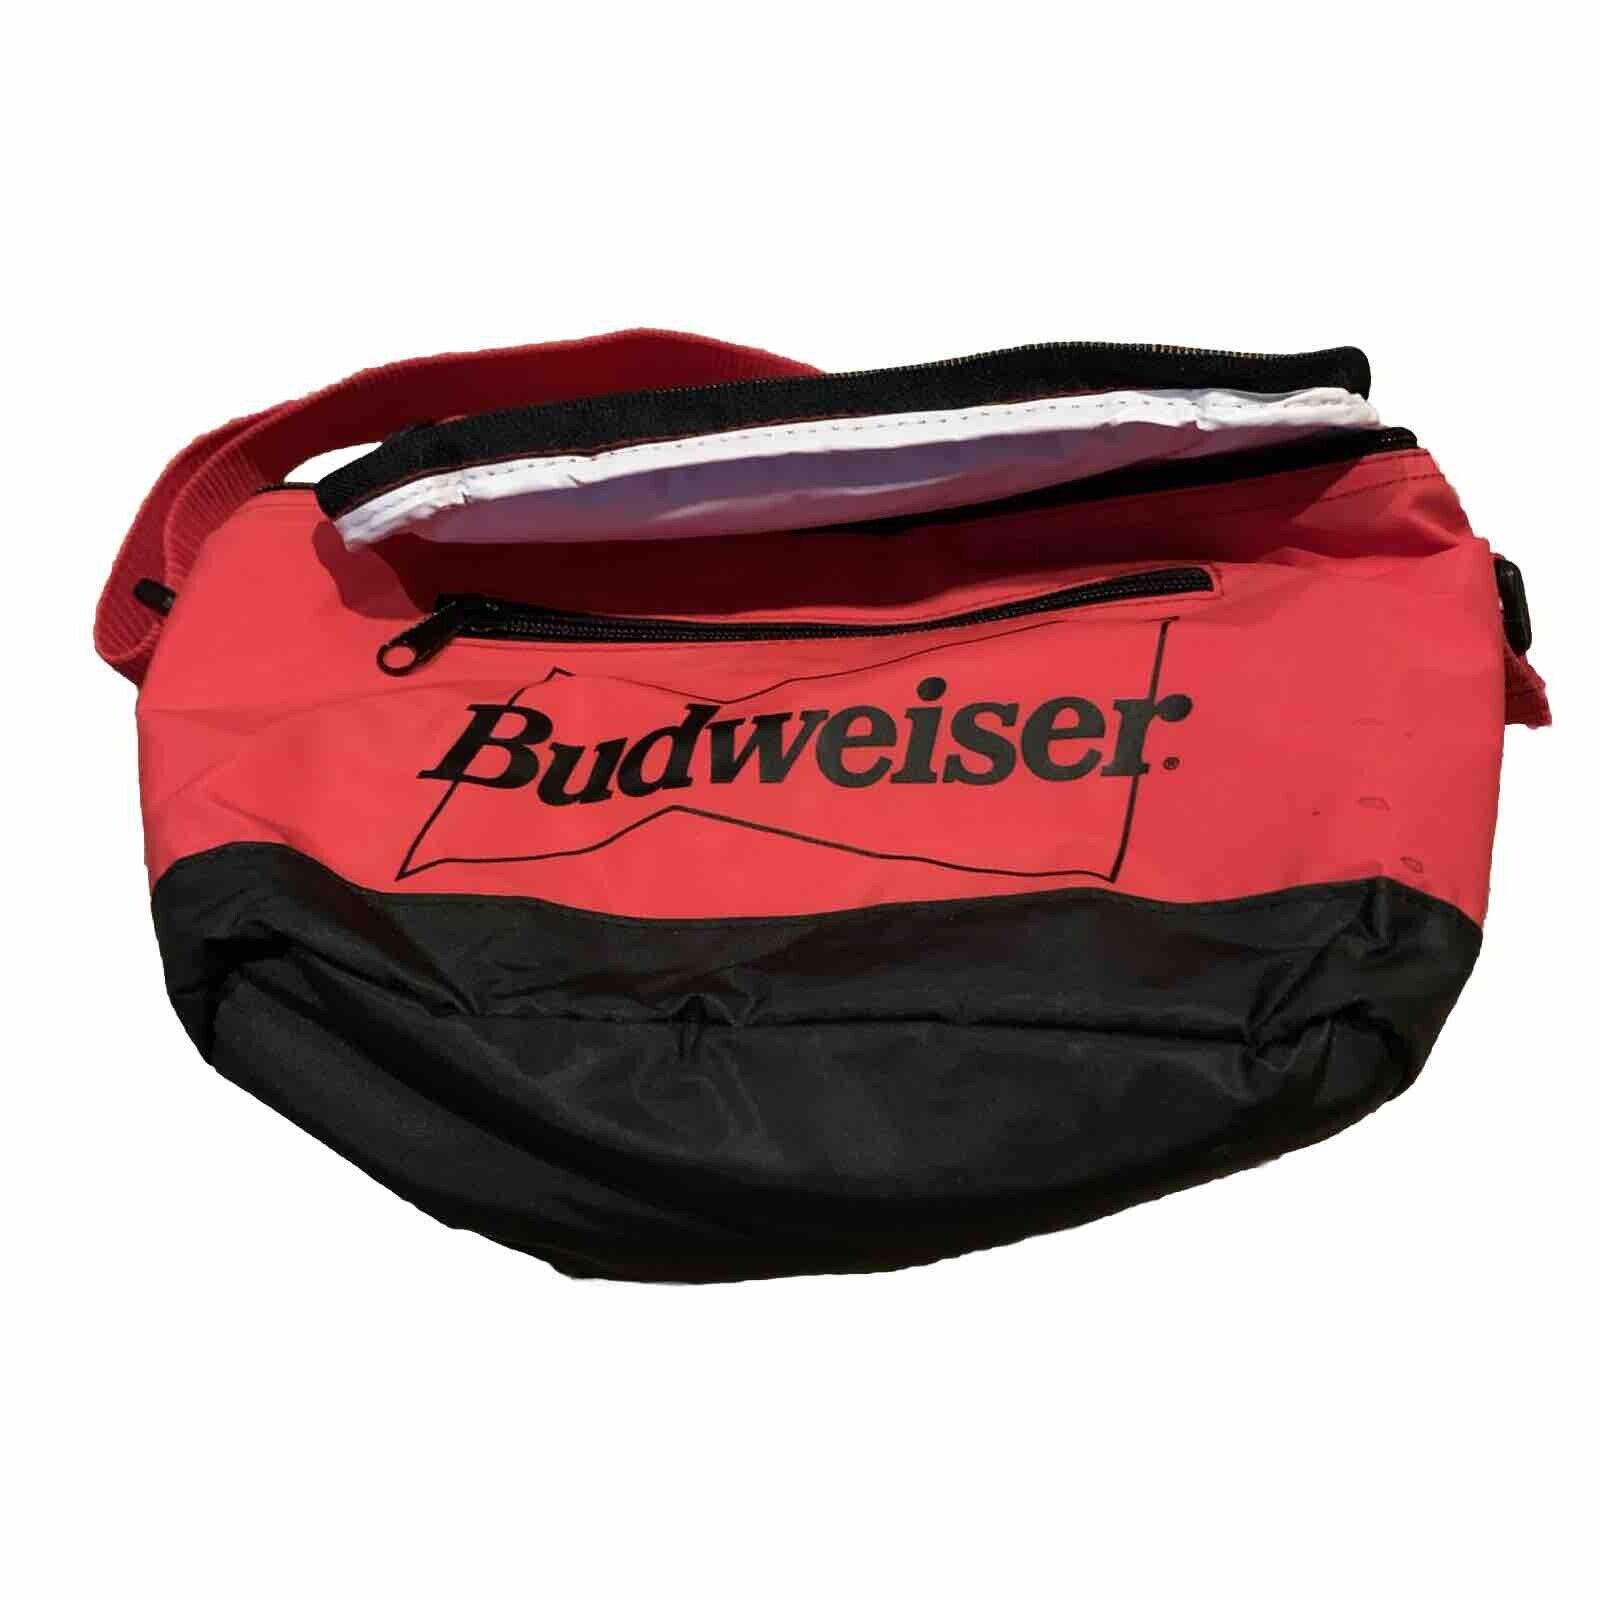 Vintage 1990s Budweiser belt bag Red Black Cooler